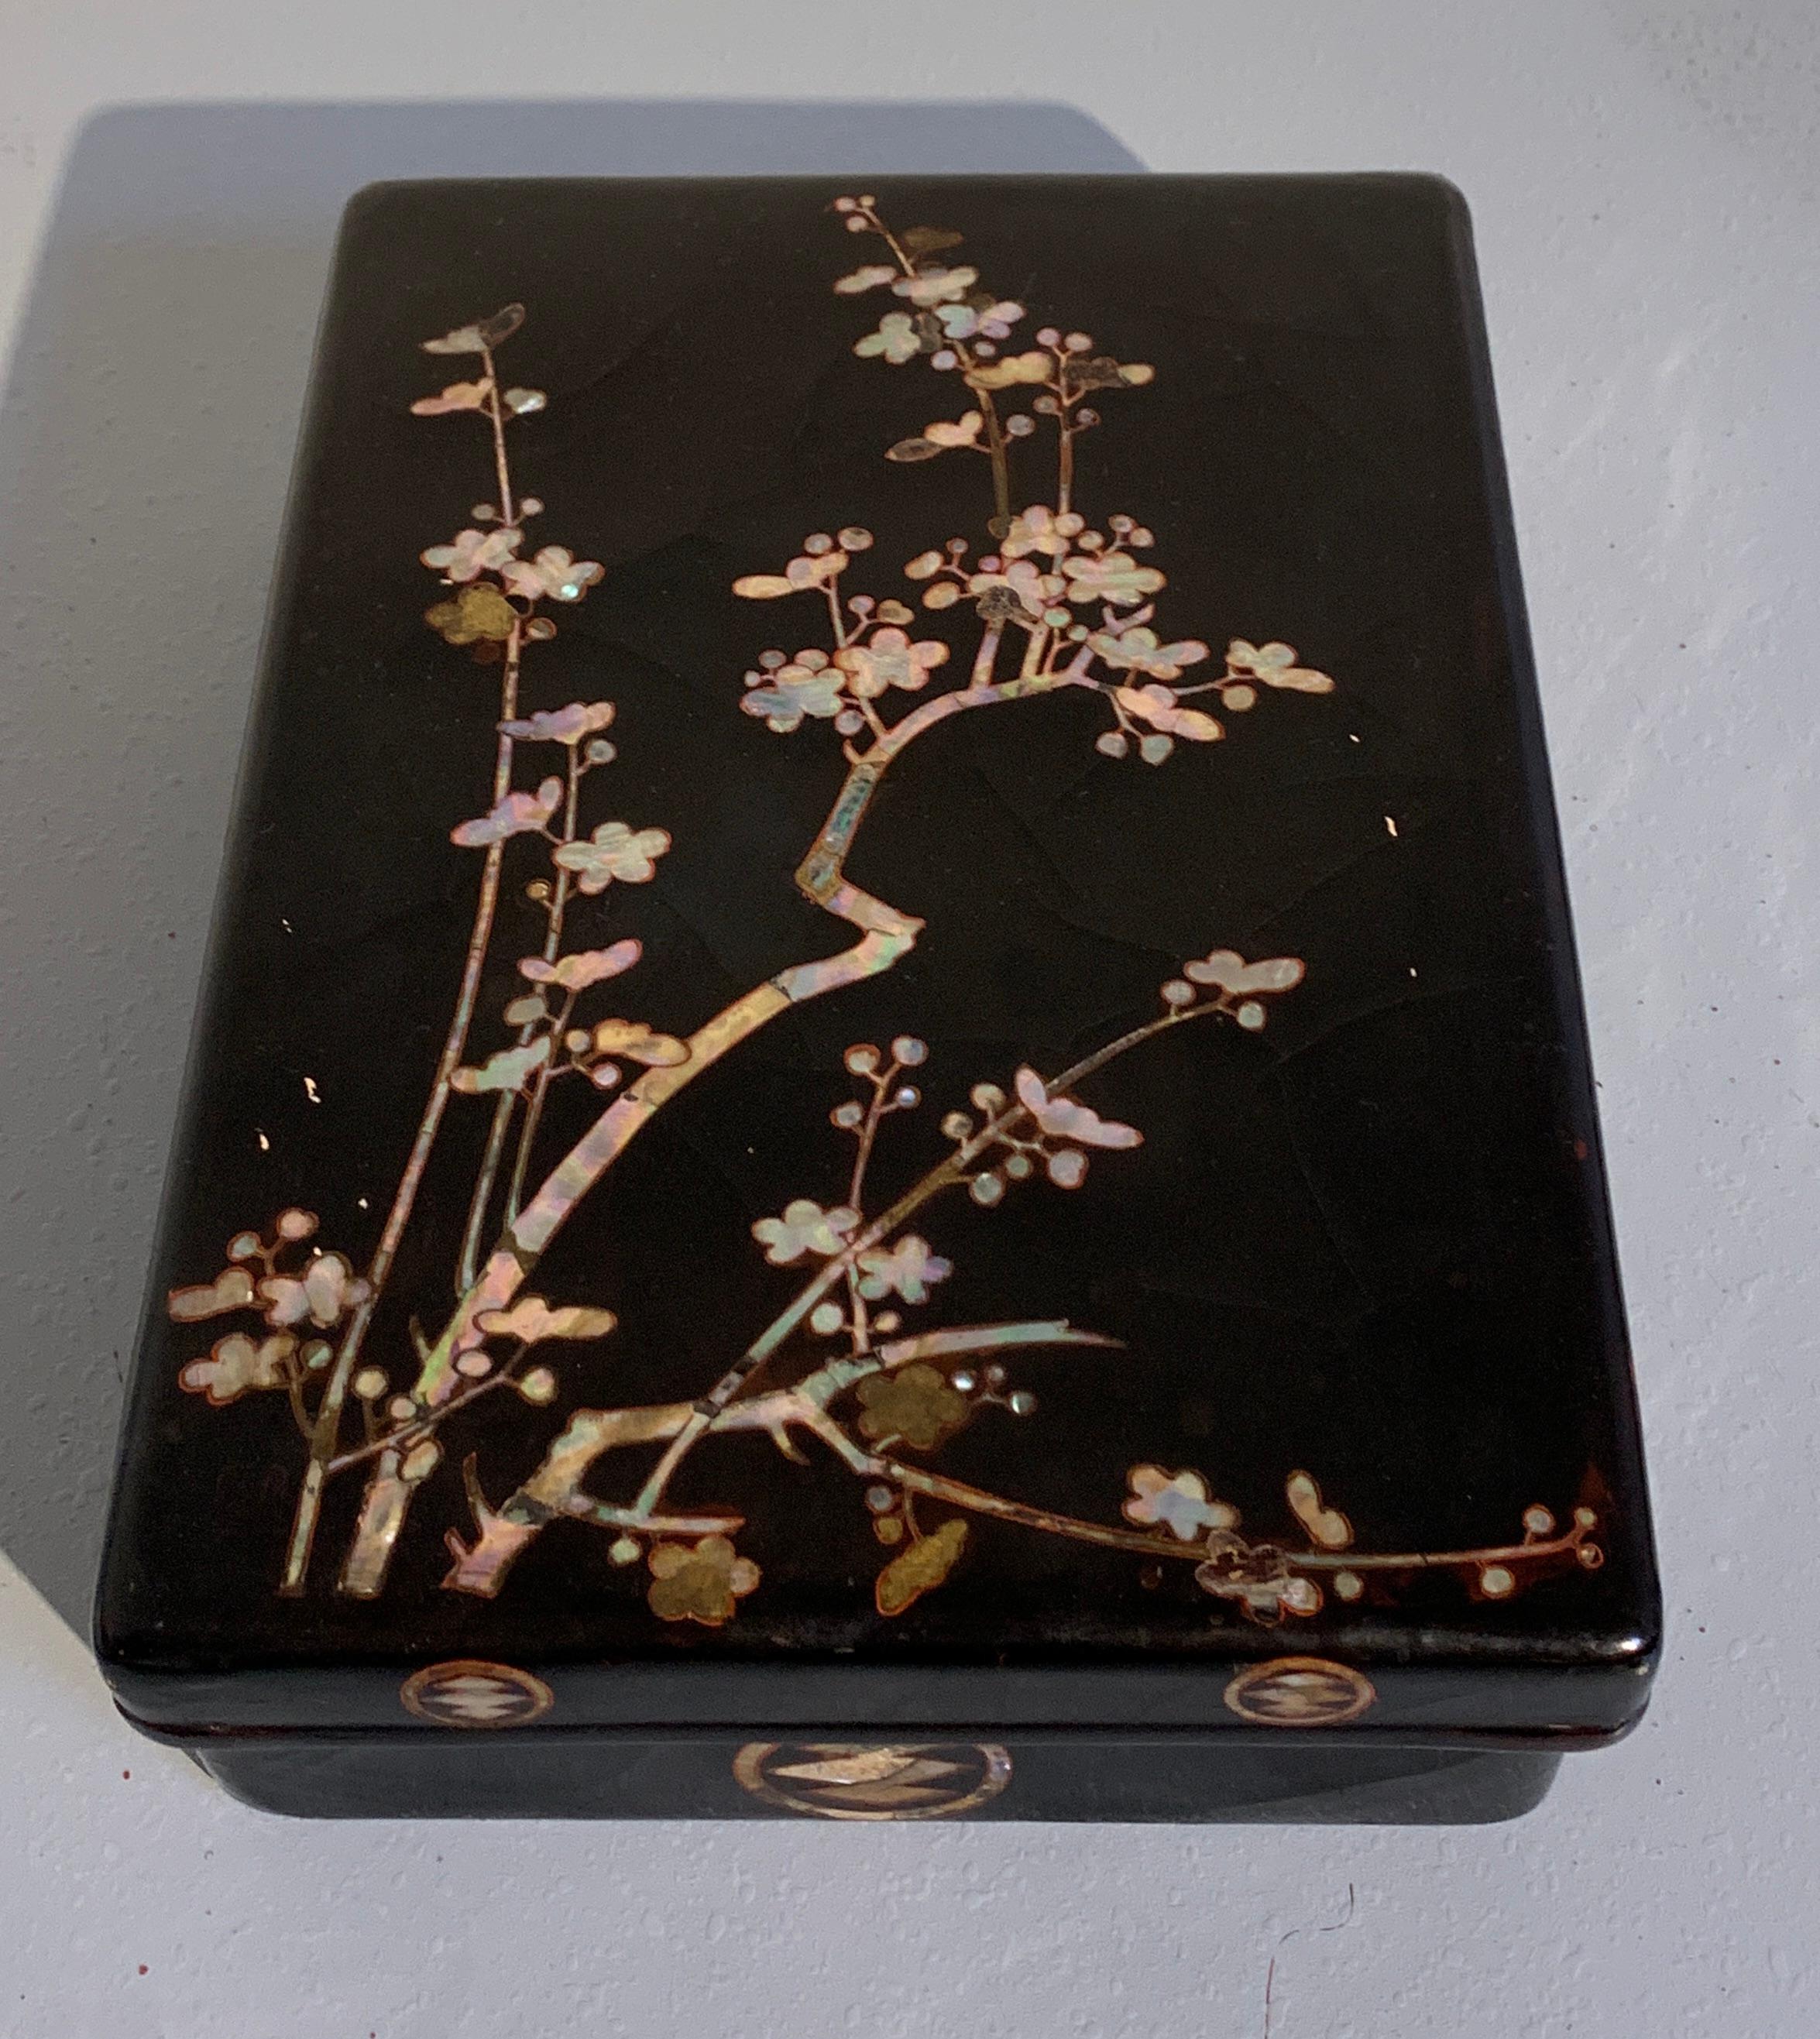 Une fine et inhabituelle boîte japonaise en laque noire et incrustations de nacre, période Momoyama, XVIe siècle, Japon. 

La grande boîte et le couvercle présentent un motif de branches de prunier en fleur, rendu en nacre sur de la laque noire.